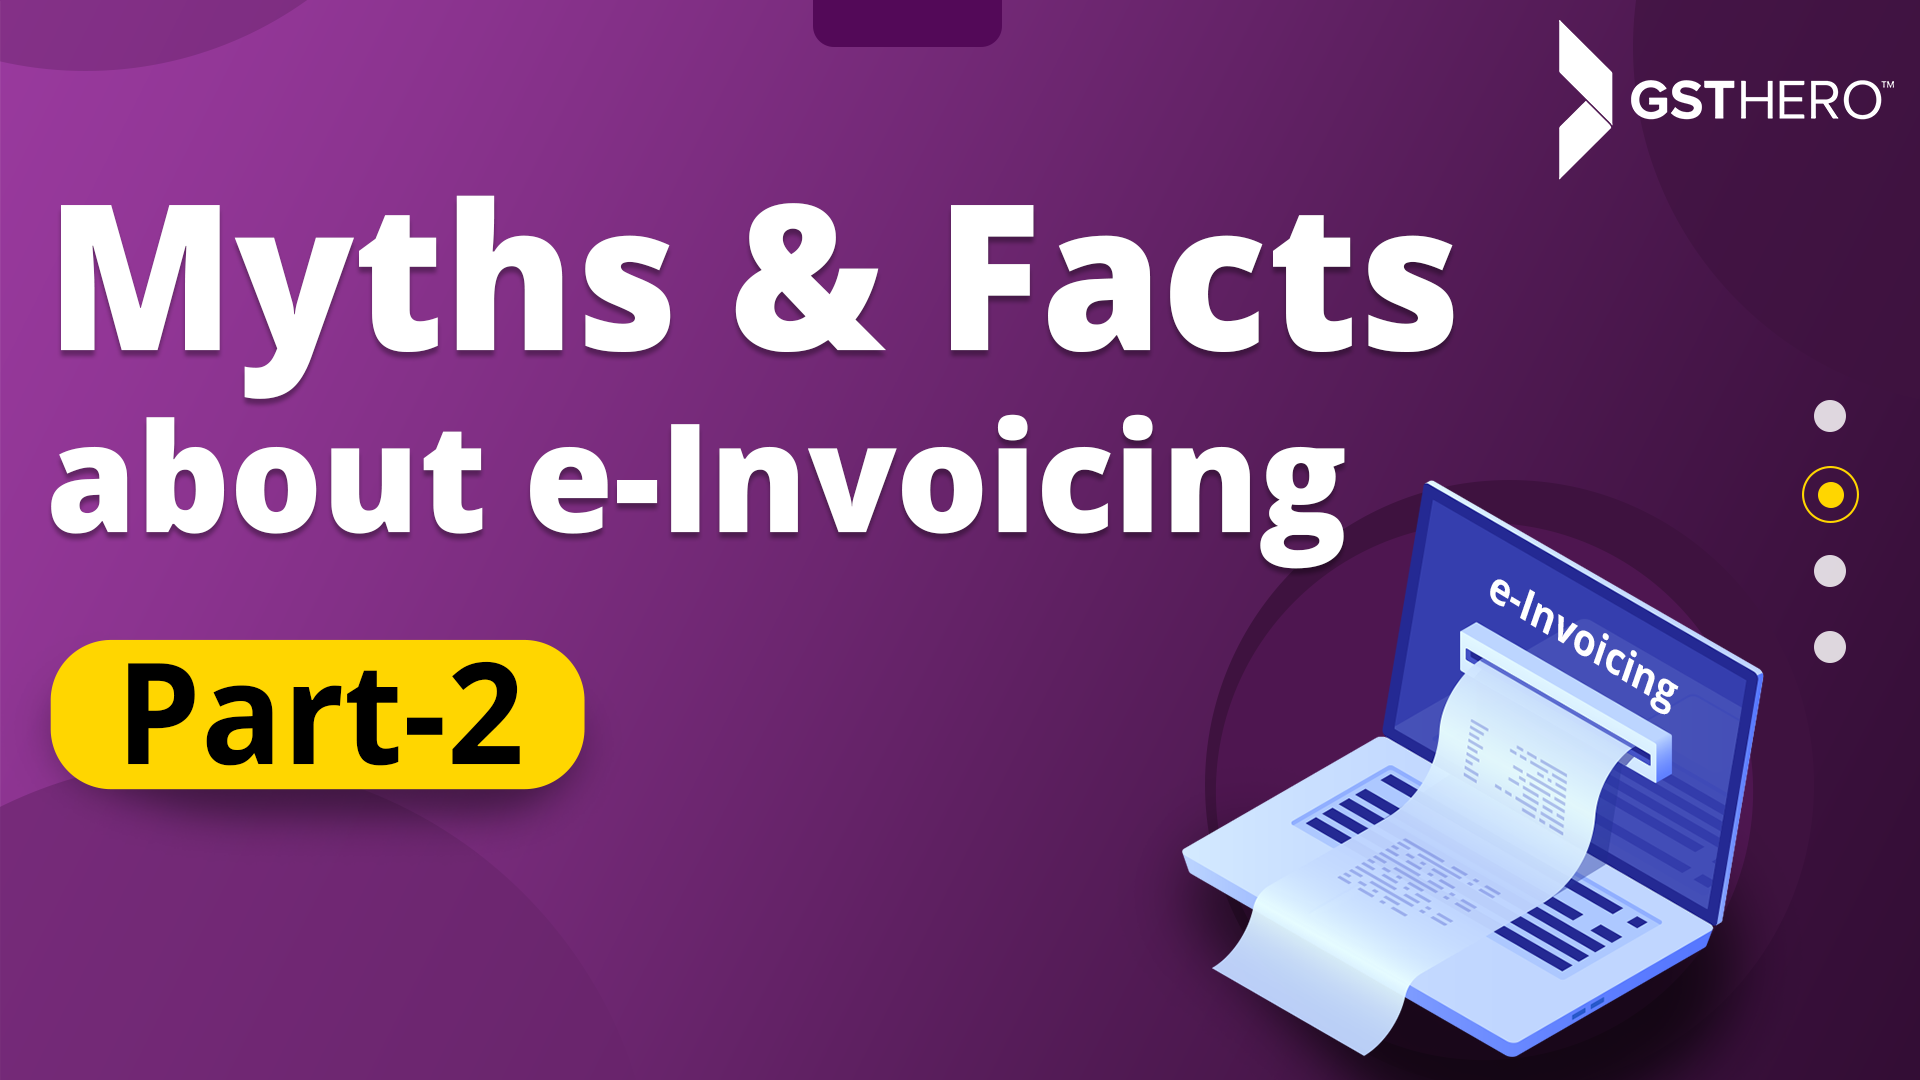 e invoicing under GST